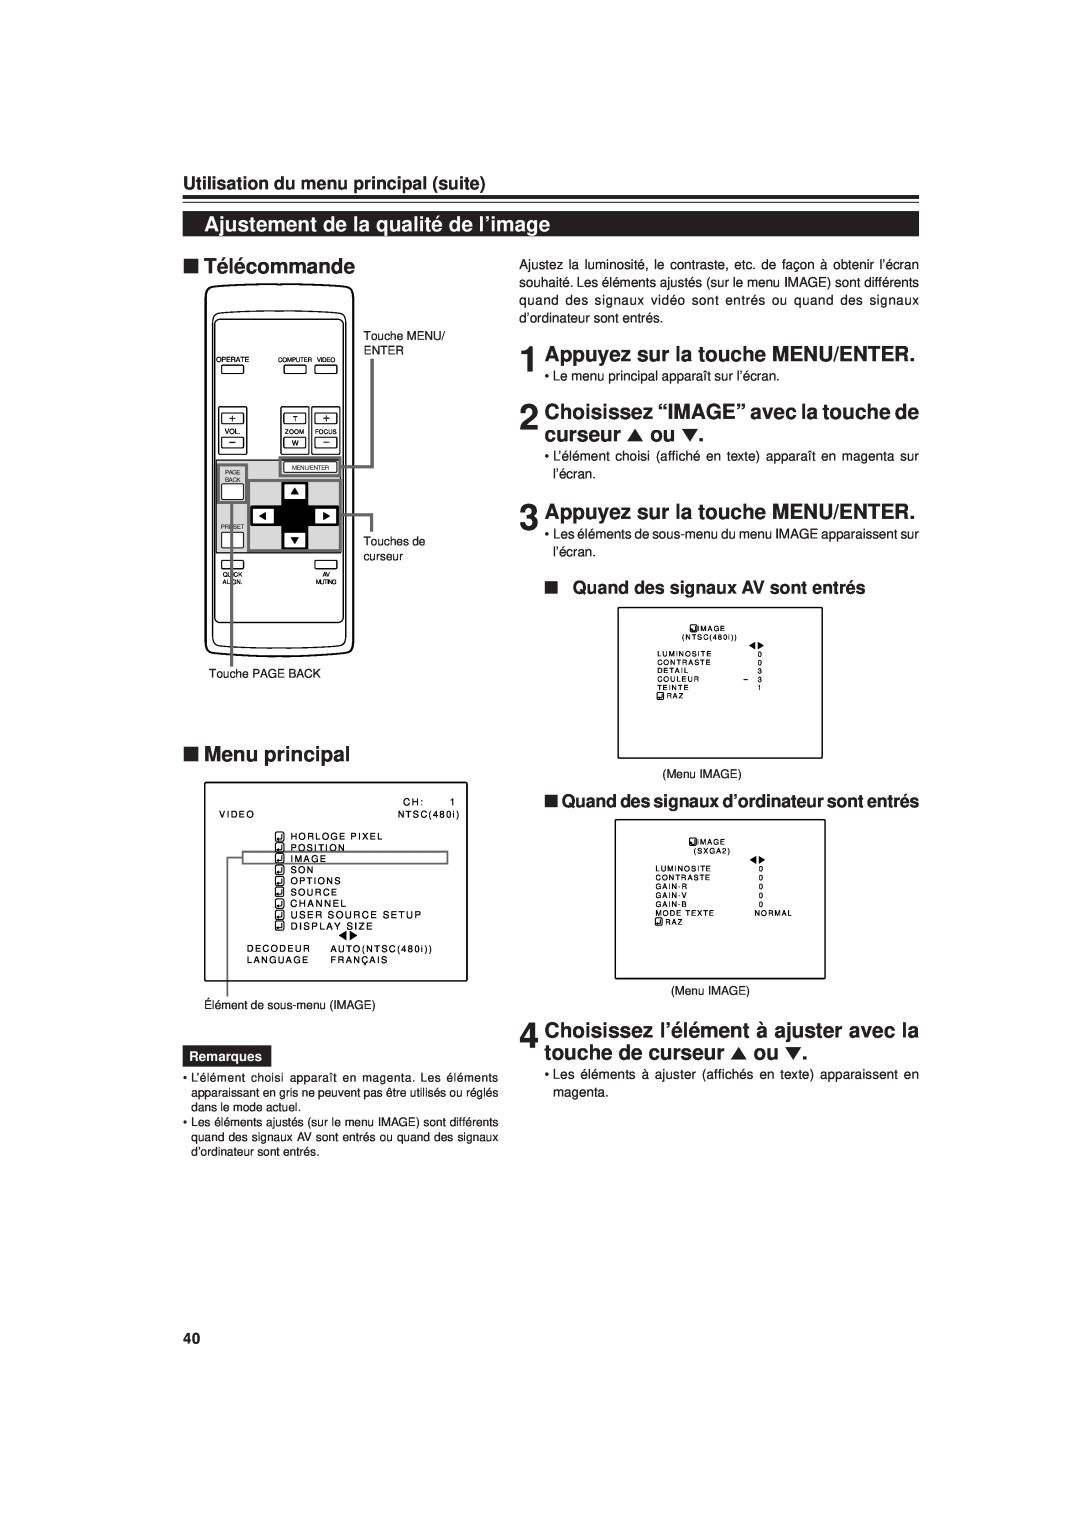 JVC DLA-G20U manual Ajustement de la qualité de l’image, Choisissez “IMAGE” avec la touche de curseur 5 ou ∞, Télécommande 